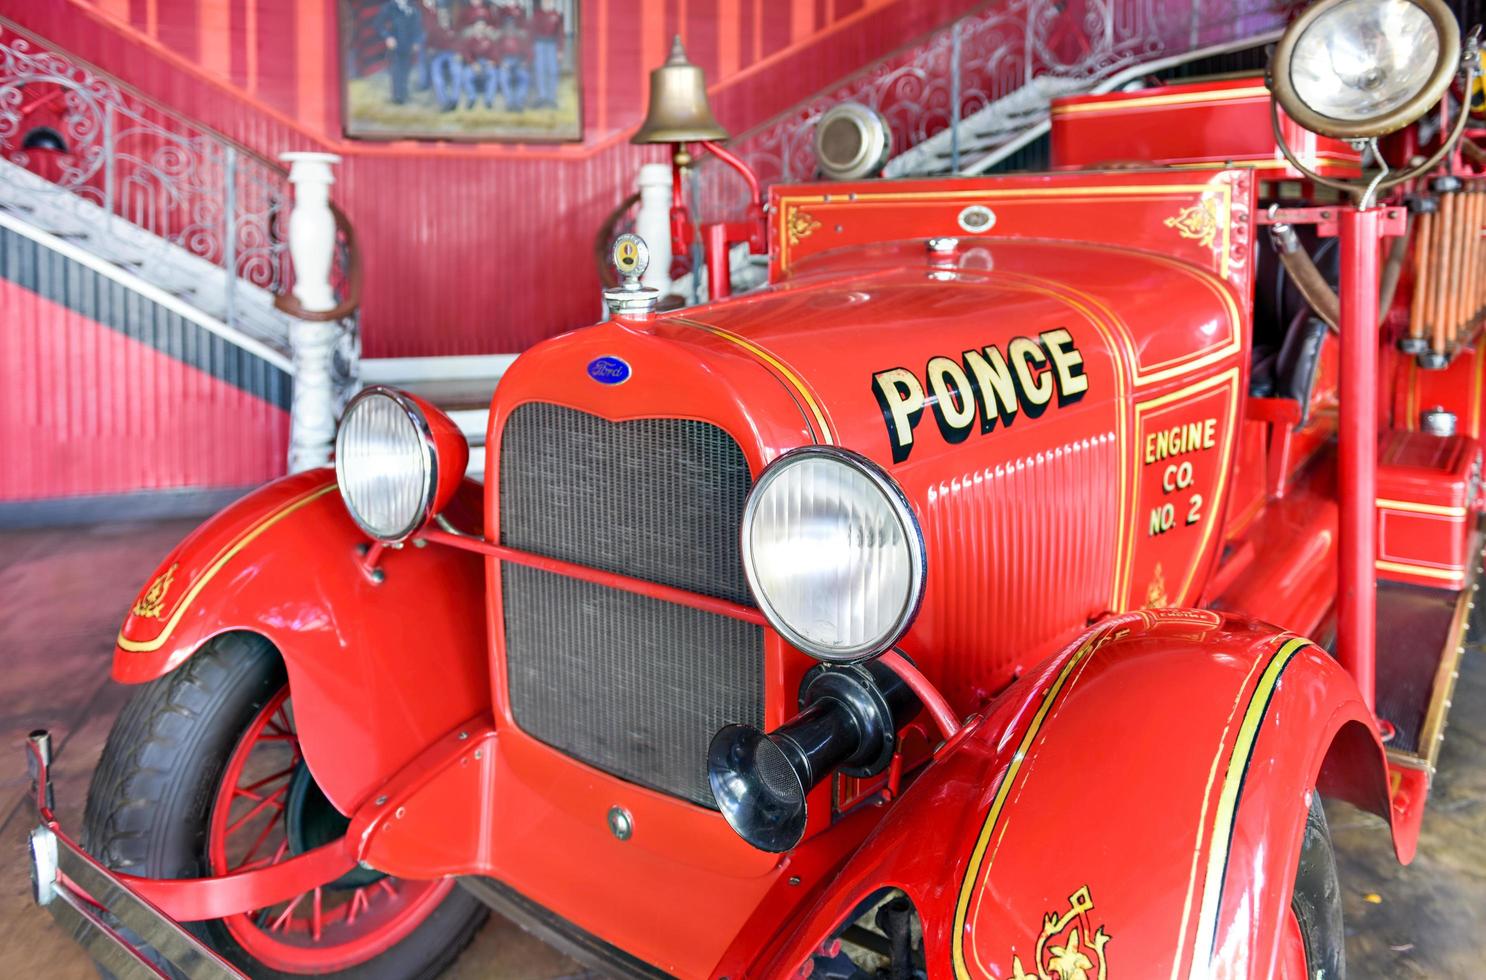 ponce, porto rico - 27 décembre 2015 - camion de pompiers ford dans le musée de la caserne de pompiers parque de bombas à ponce, porto rico. photo